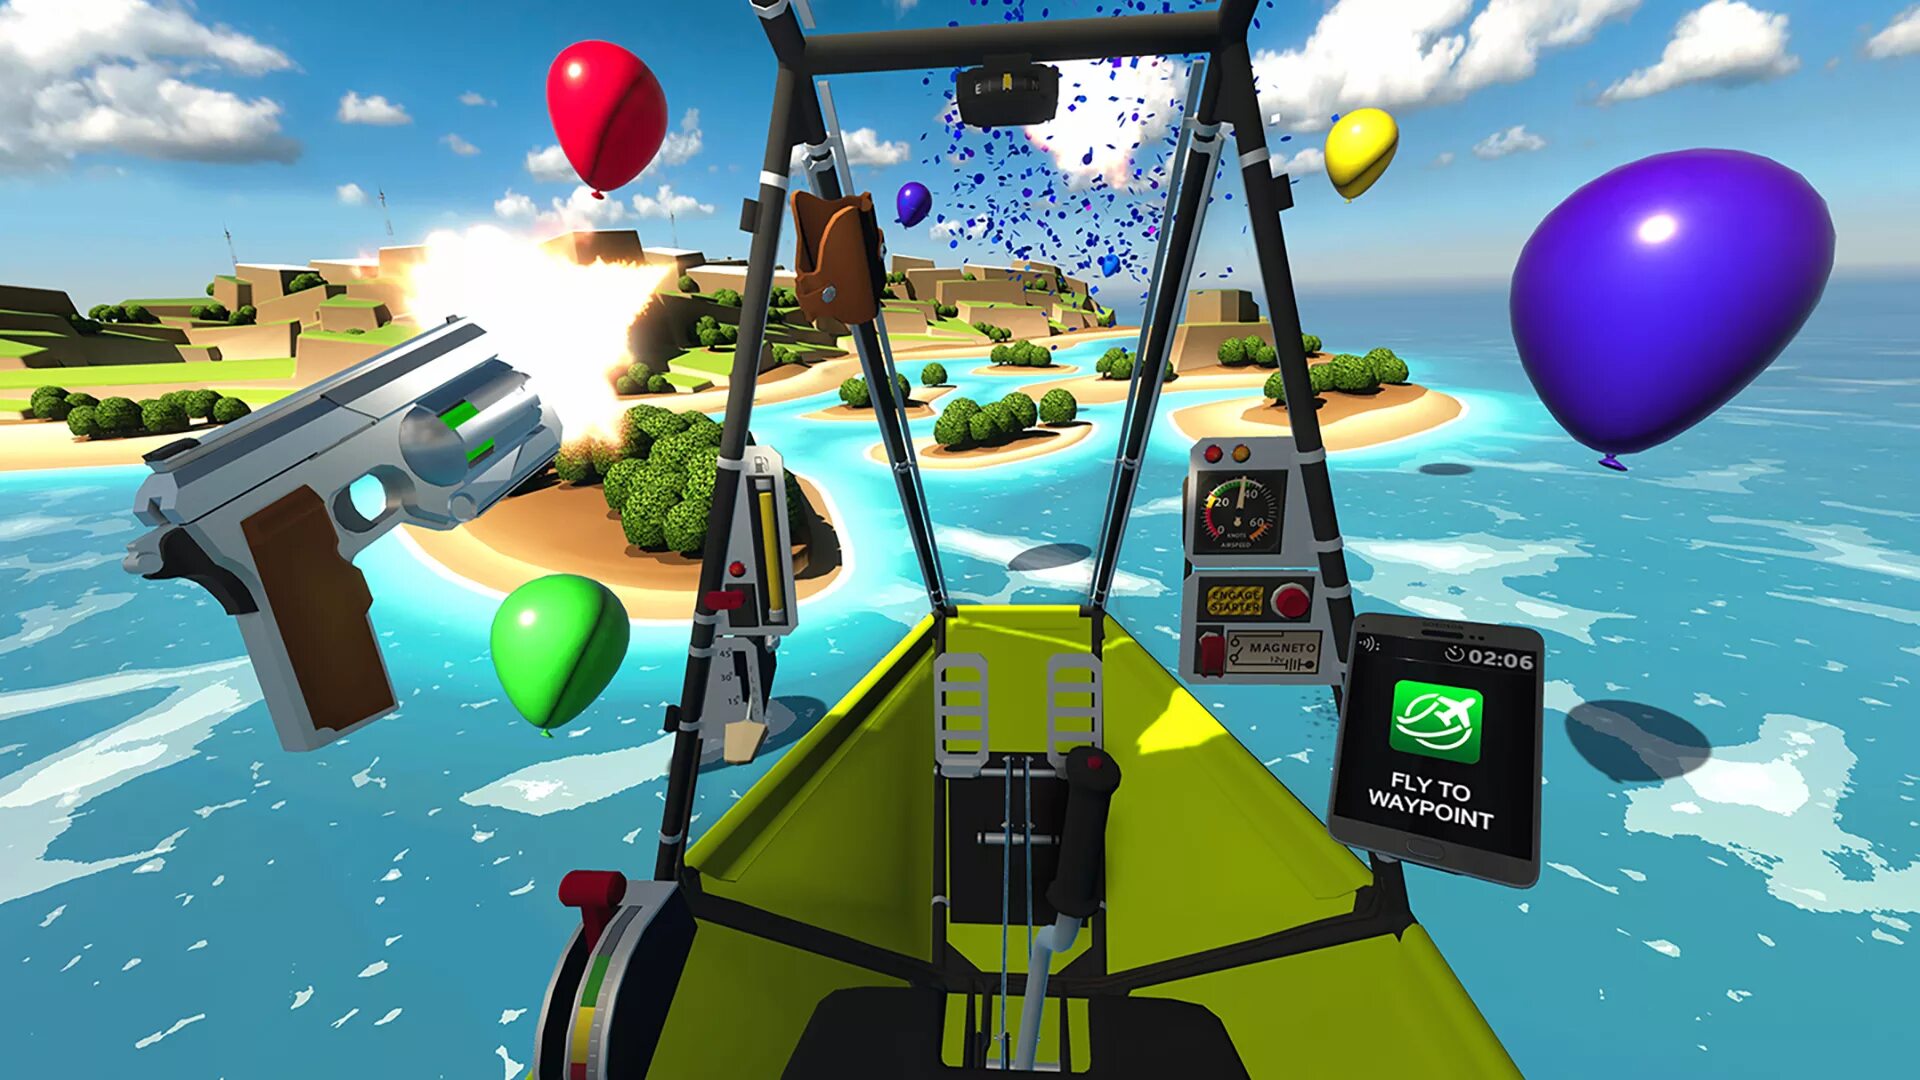 Том на планете игра. Бурение планет игра. Хай флэт игра. Симулятор полёта на дельтаплане PSVR. Ultra Wings 2 VR.